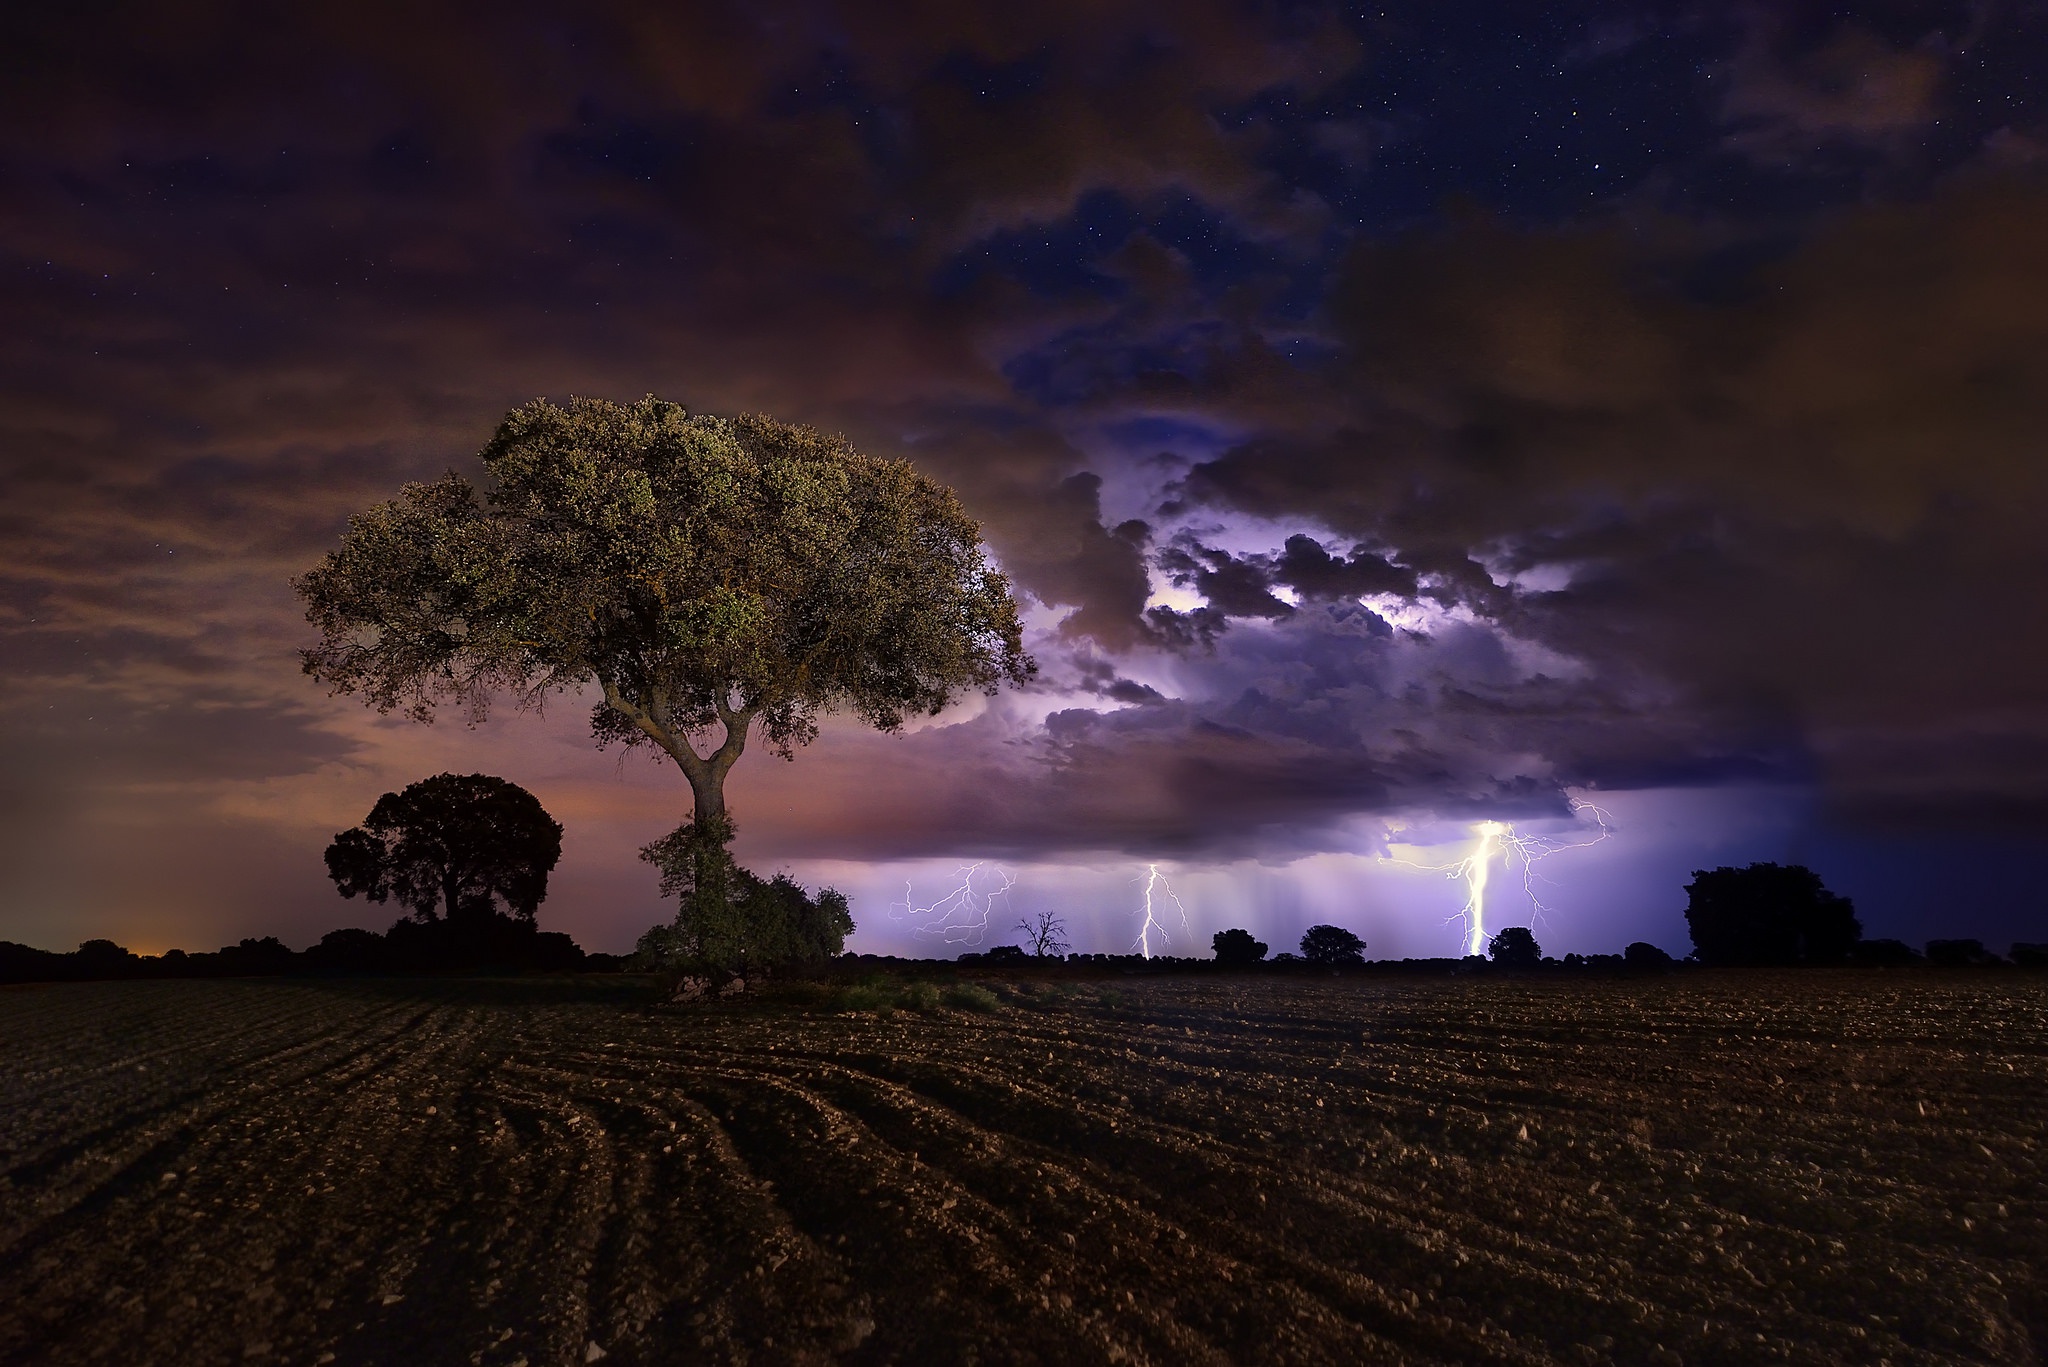 General 2048x1367 dark landscape field night storm sky trees lightning